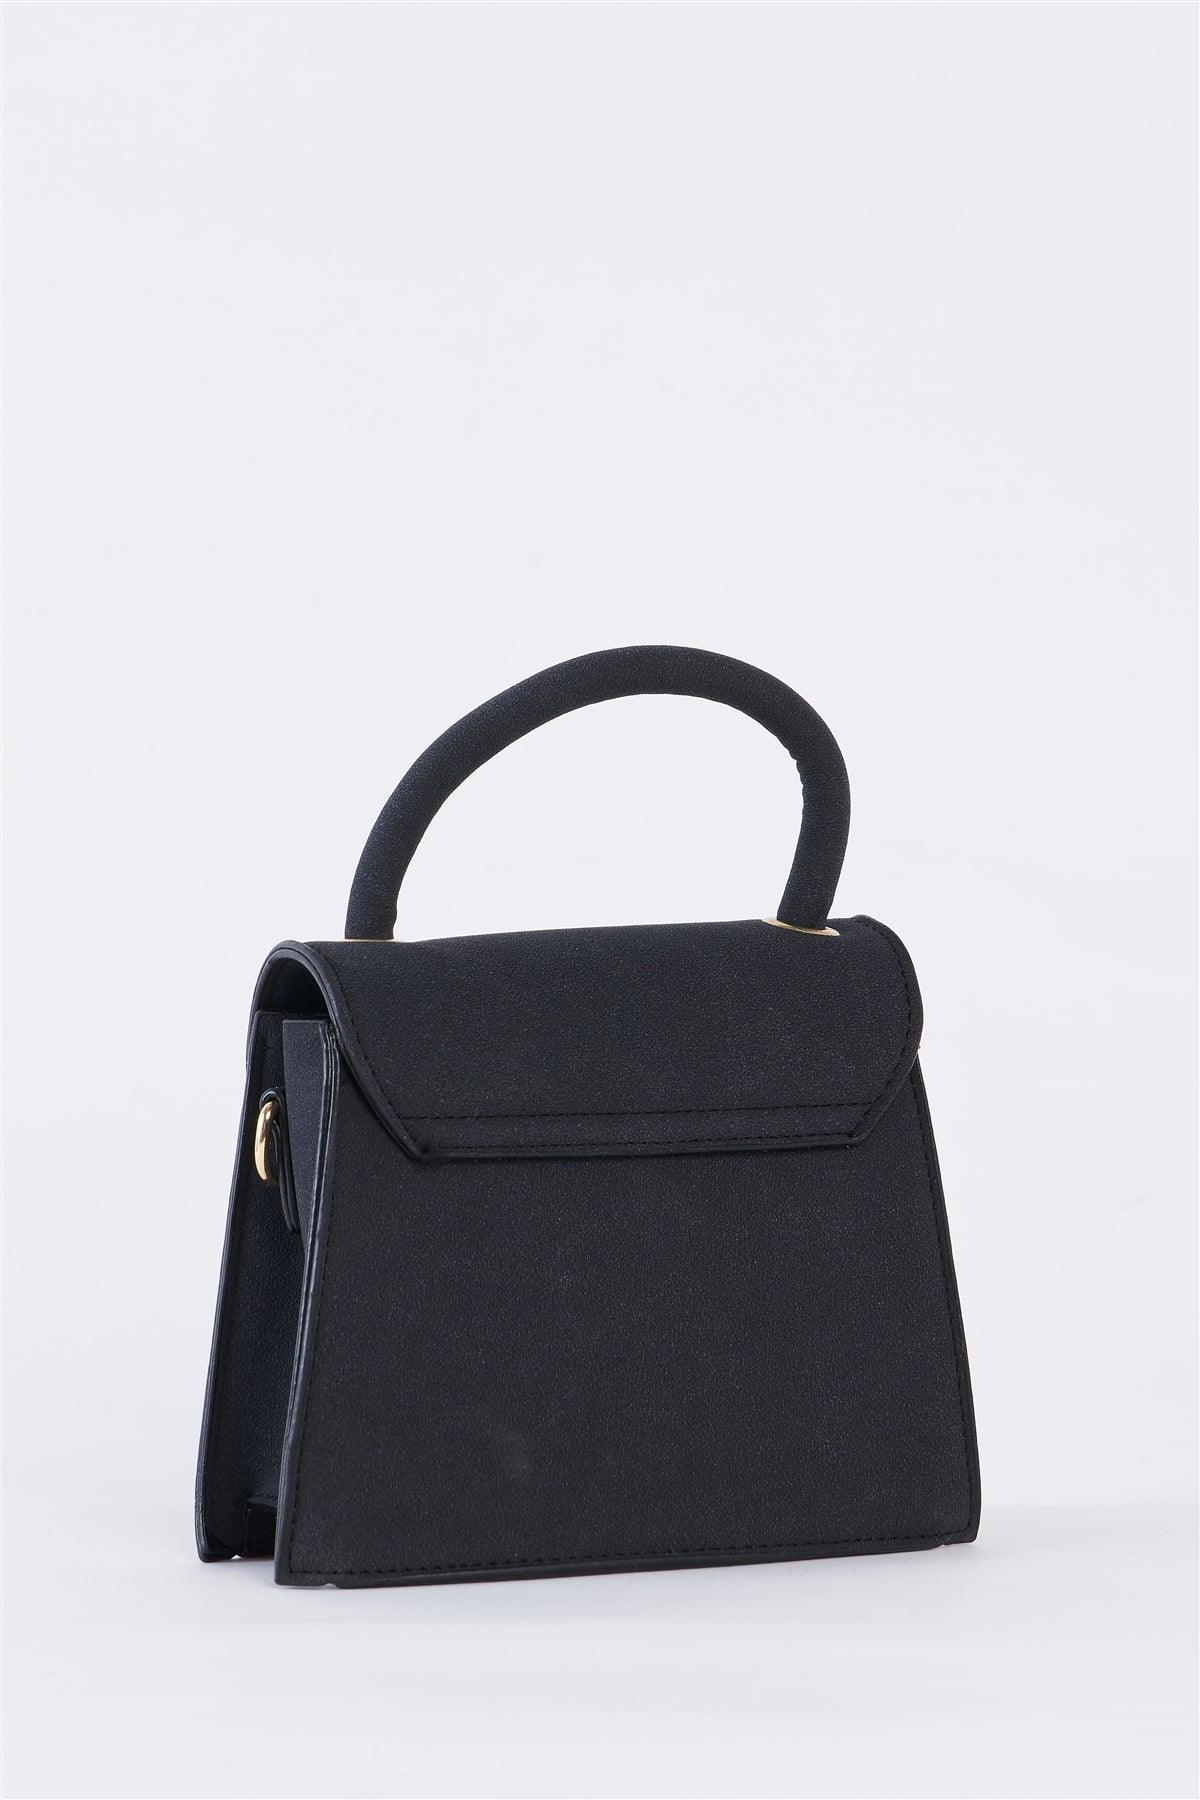 Black Vintage Inspired Purse With Gem Closure Detail /1 Bag